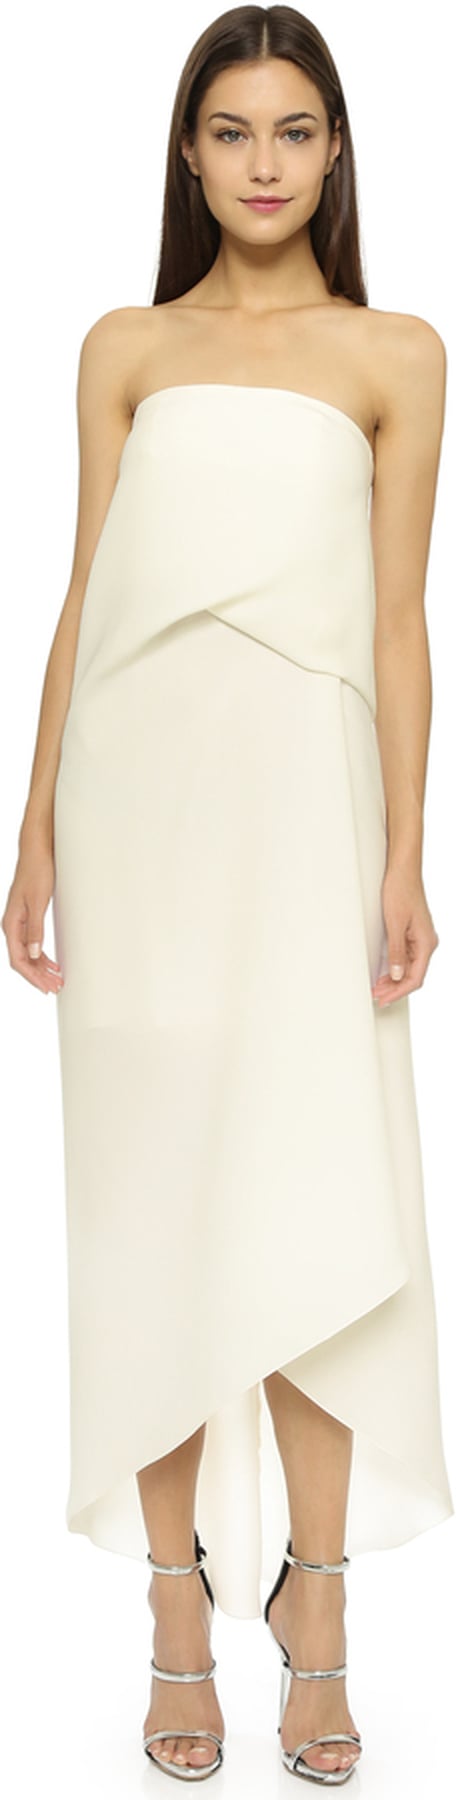 Kate Beckinsale Wearing a White Dress | POPSUGAR Fashion